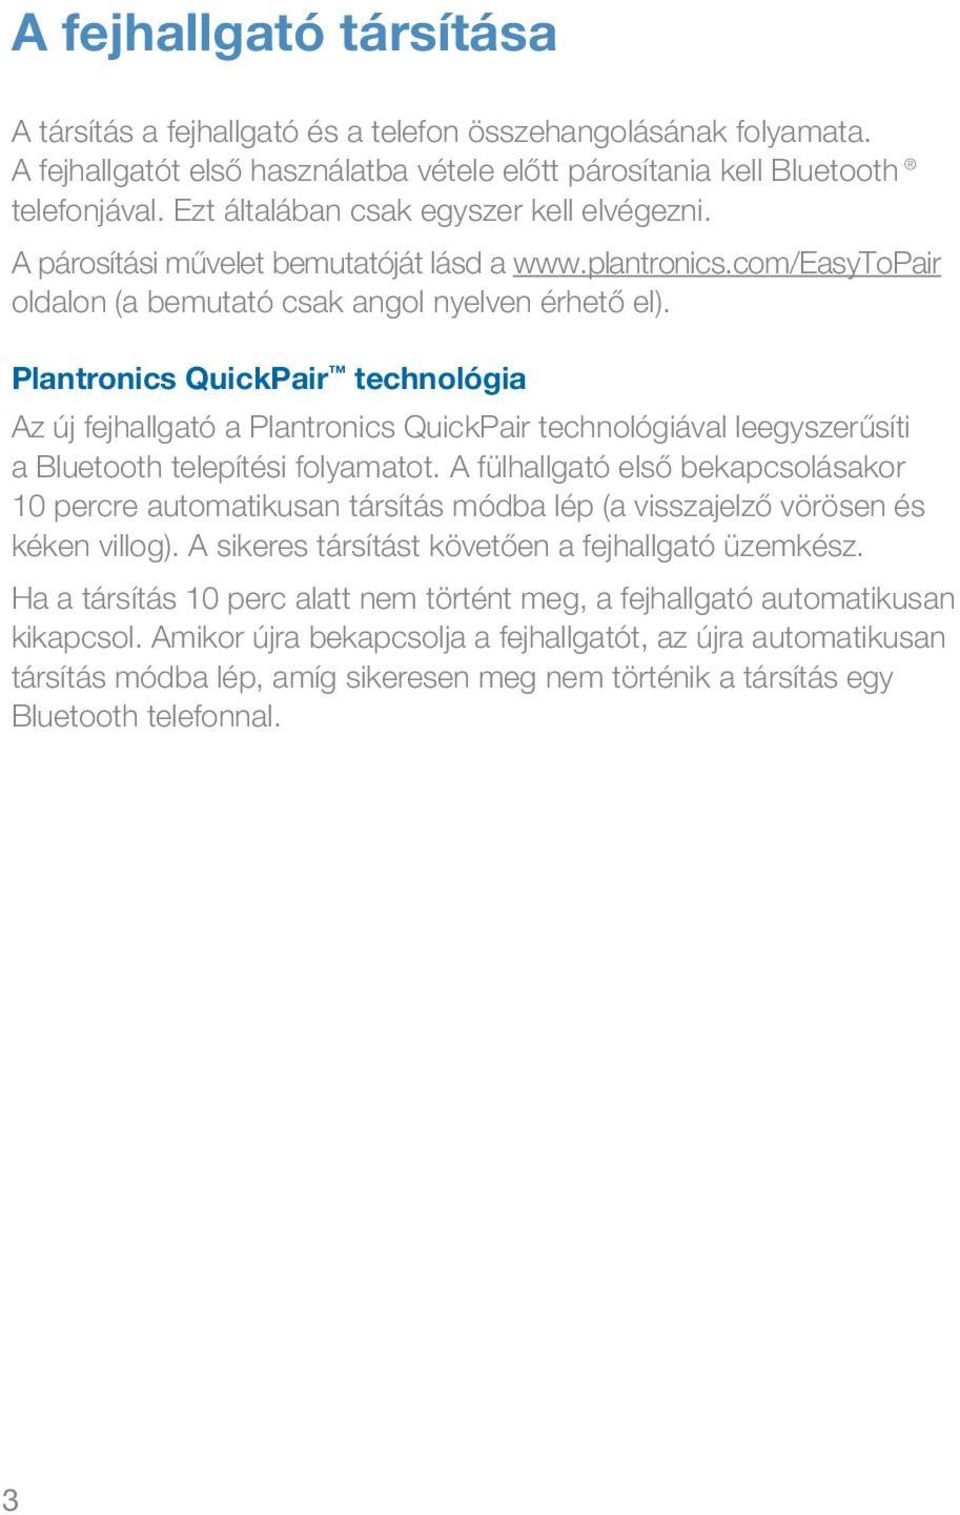 Plantronics QuickPair technológia Az új fejhallgató a Plantronics QuickPair technológiával leegyszerűsíti a Bluetooth telepítési folyamatot.